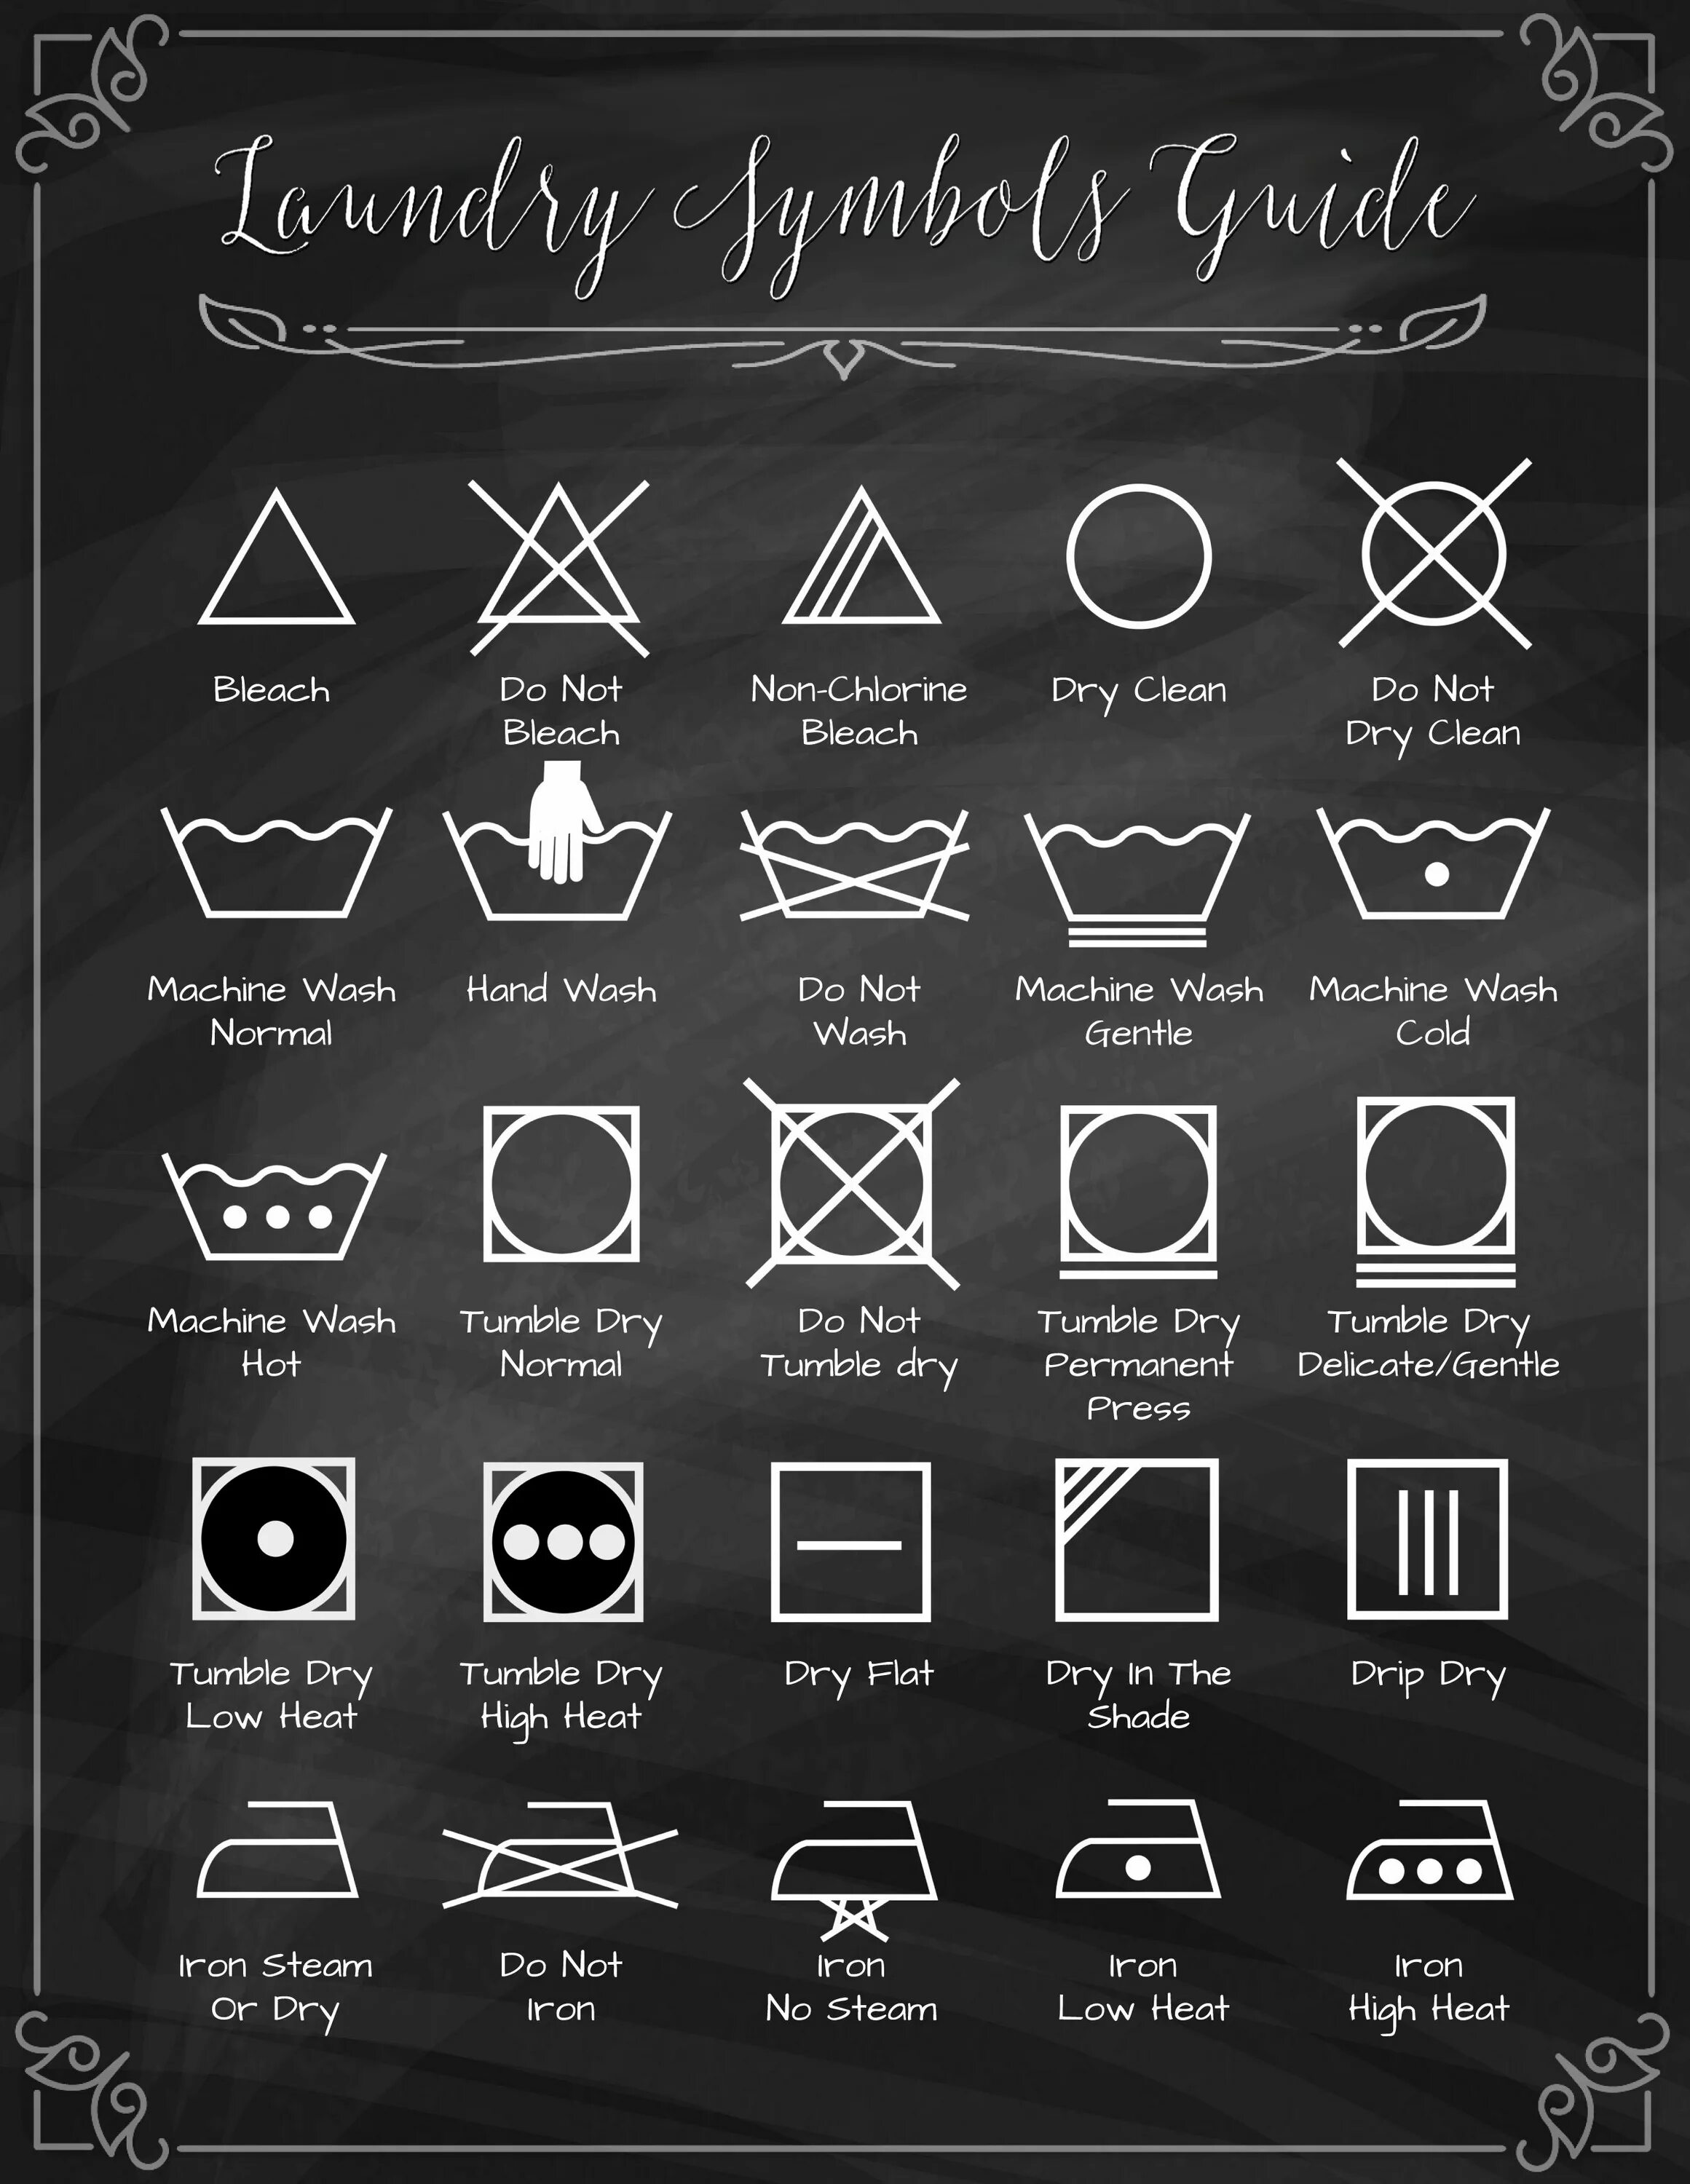 Do not dry clean. Значки для стирки Постер. Laundry symbols. Постер правила стирки.